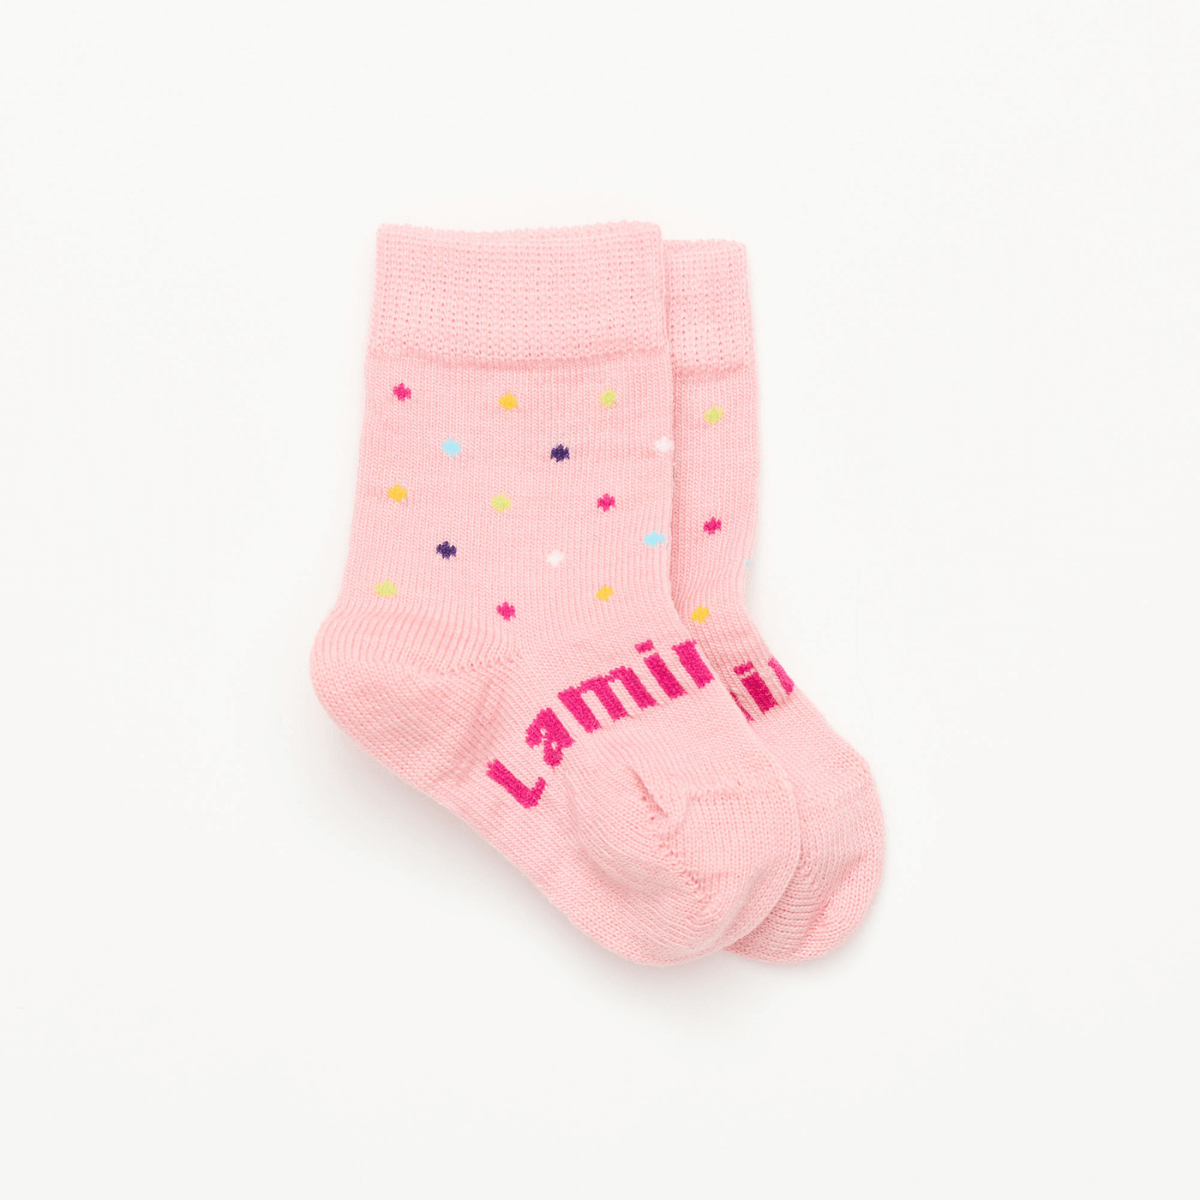 merino wool baby socks australia pink